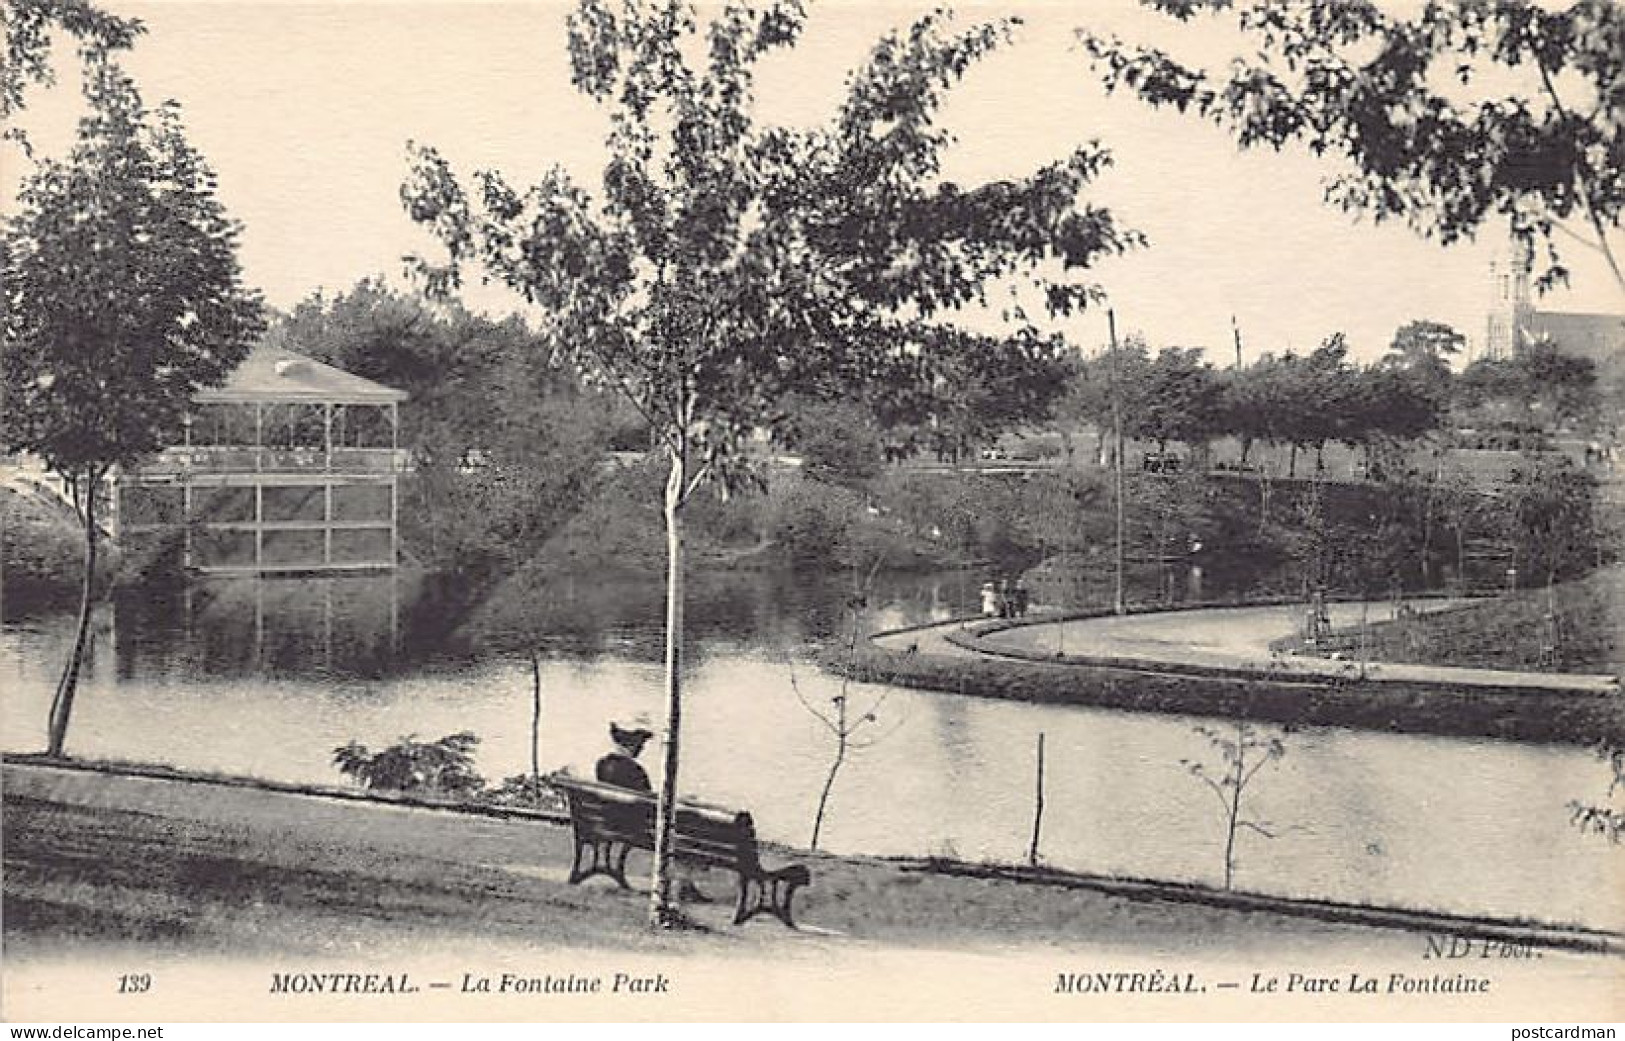 MONTRÉAL (P.Q.) Le Parc La Fontaine - Ed. Neurdein ND Phot. 139 - Montreal